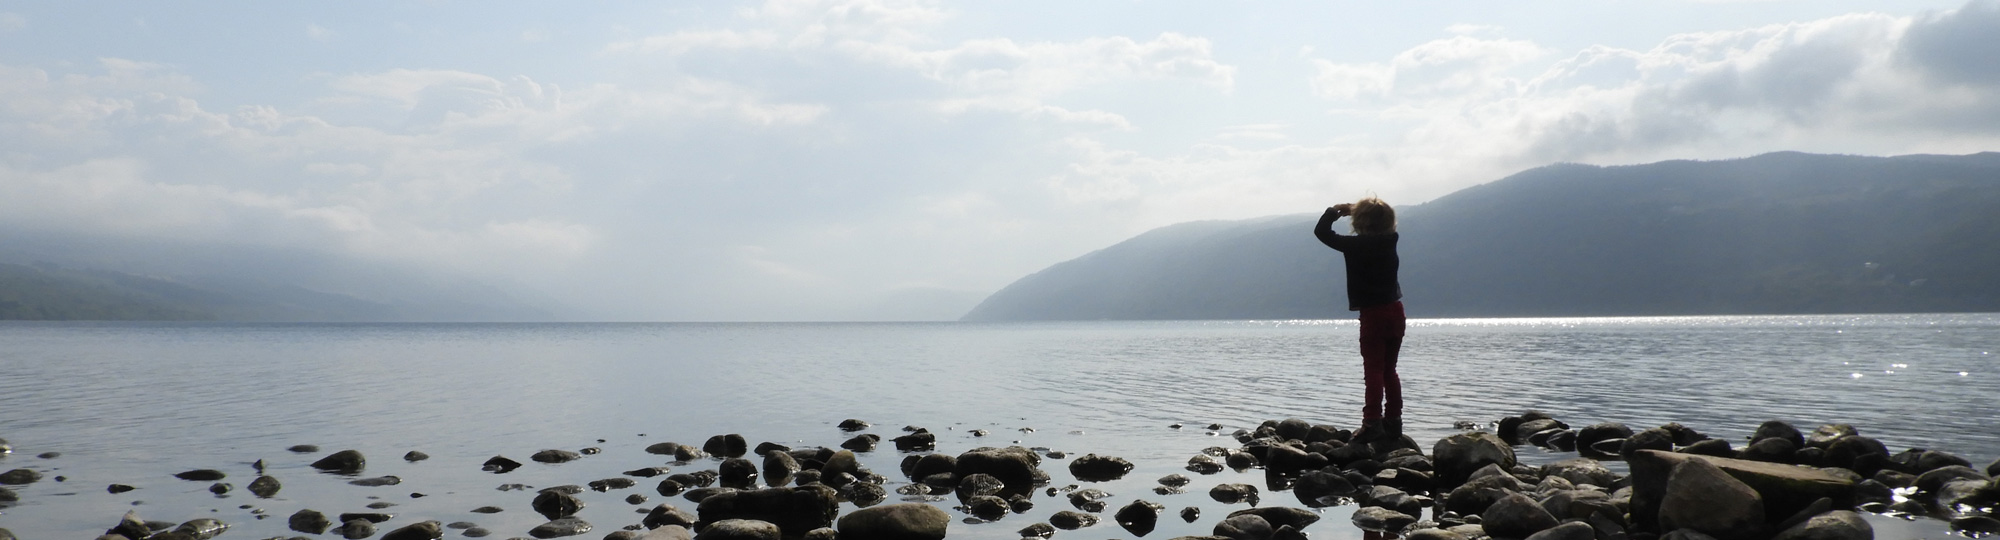 La légendaire lumière du Loch Ness